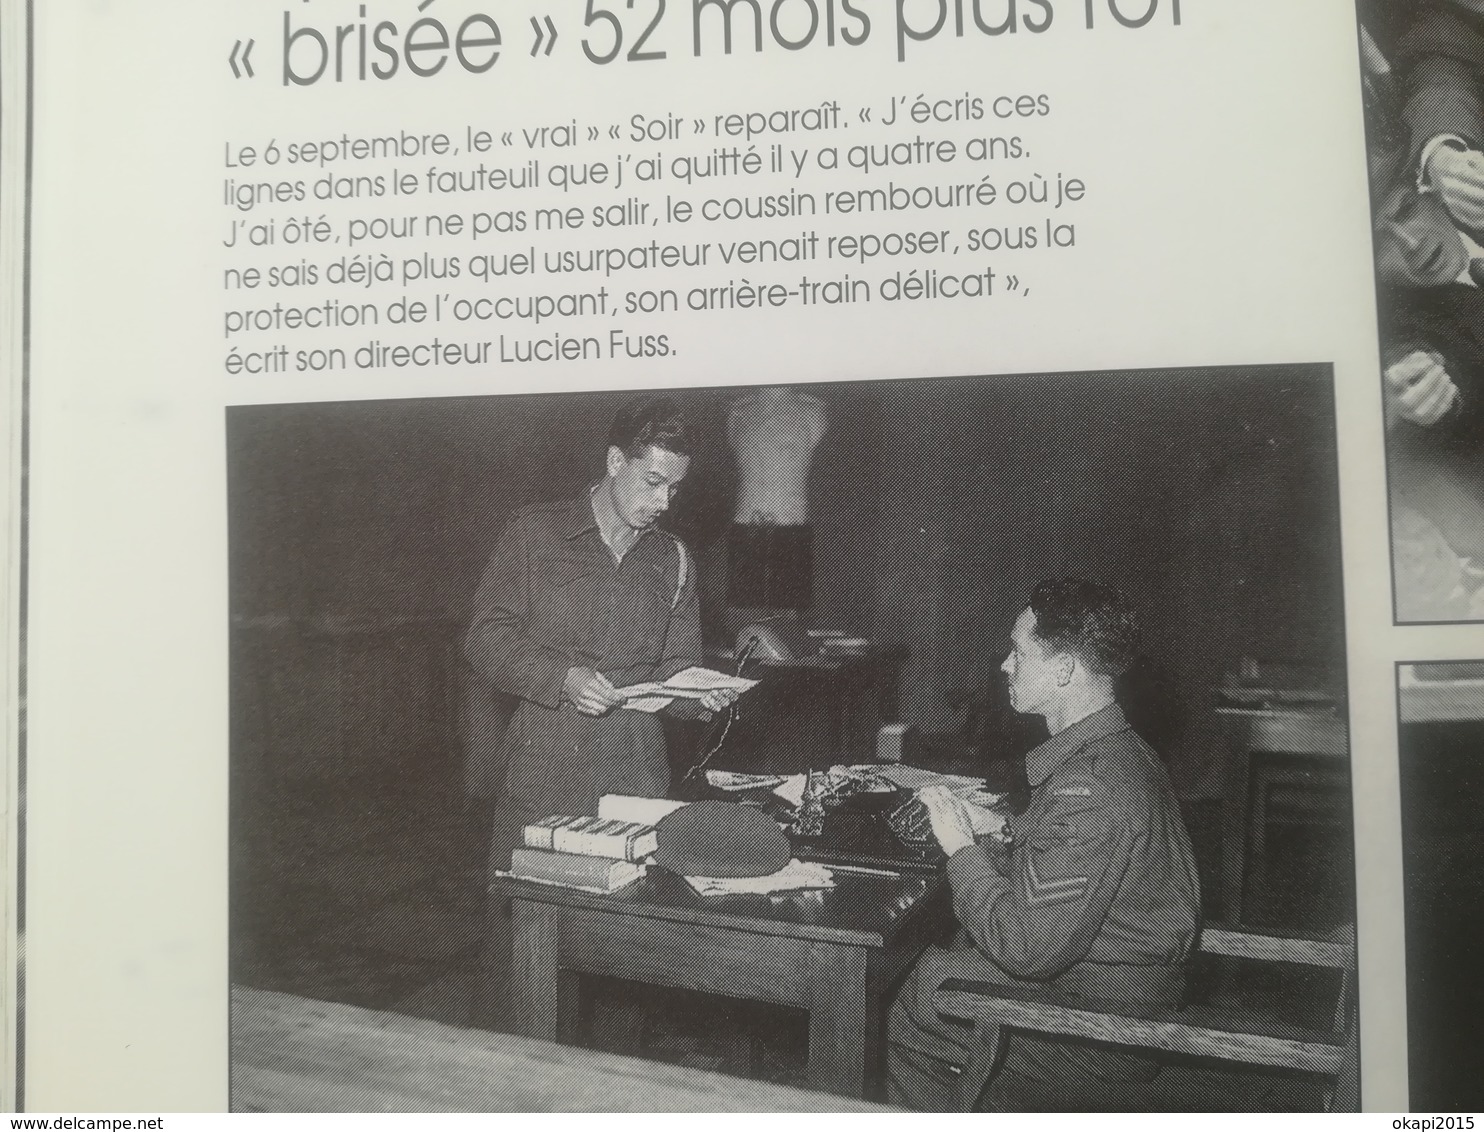 LA LIBÉRATION DE LA BELGIQUE DOSSIER JOURNAL LE SOIR ANNÉE 1994 200 PHOTOS  GUERRE 1939 - 1945 LIVRE HISTOIRE